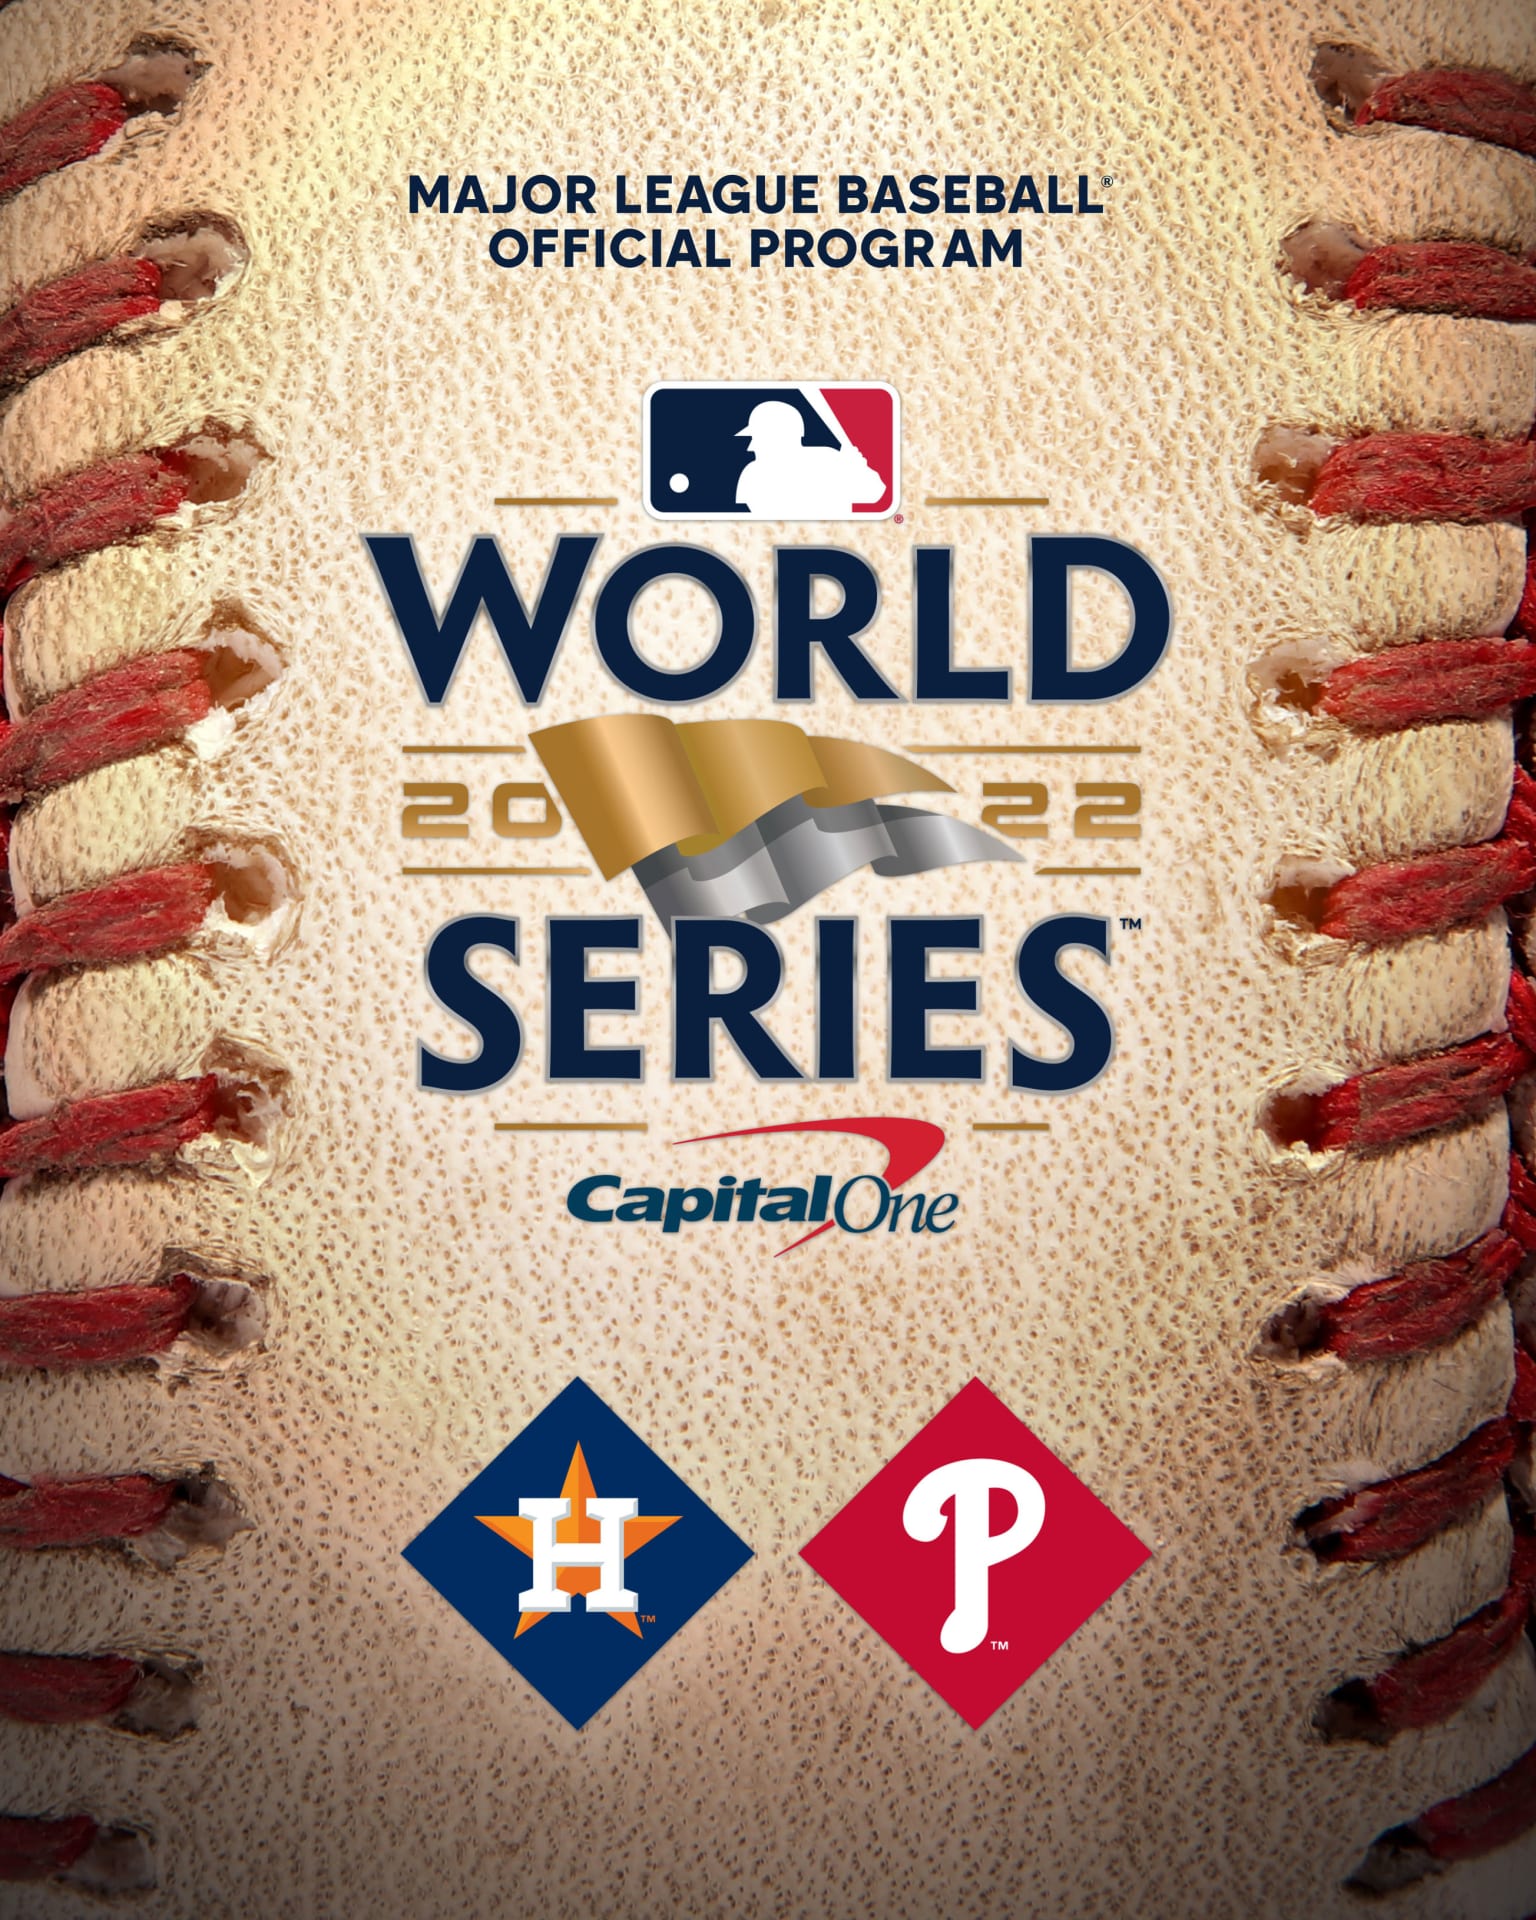  Major League Baseball Presents 2016 World Series